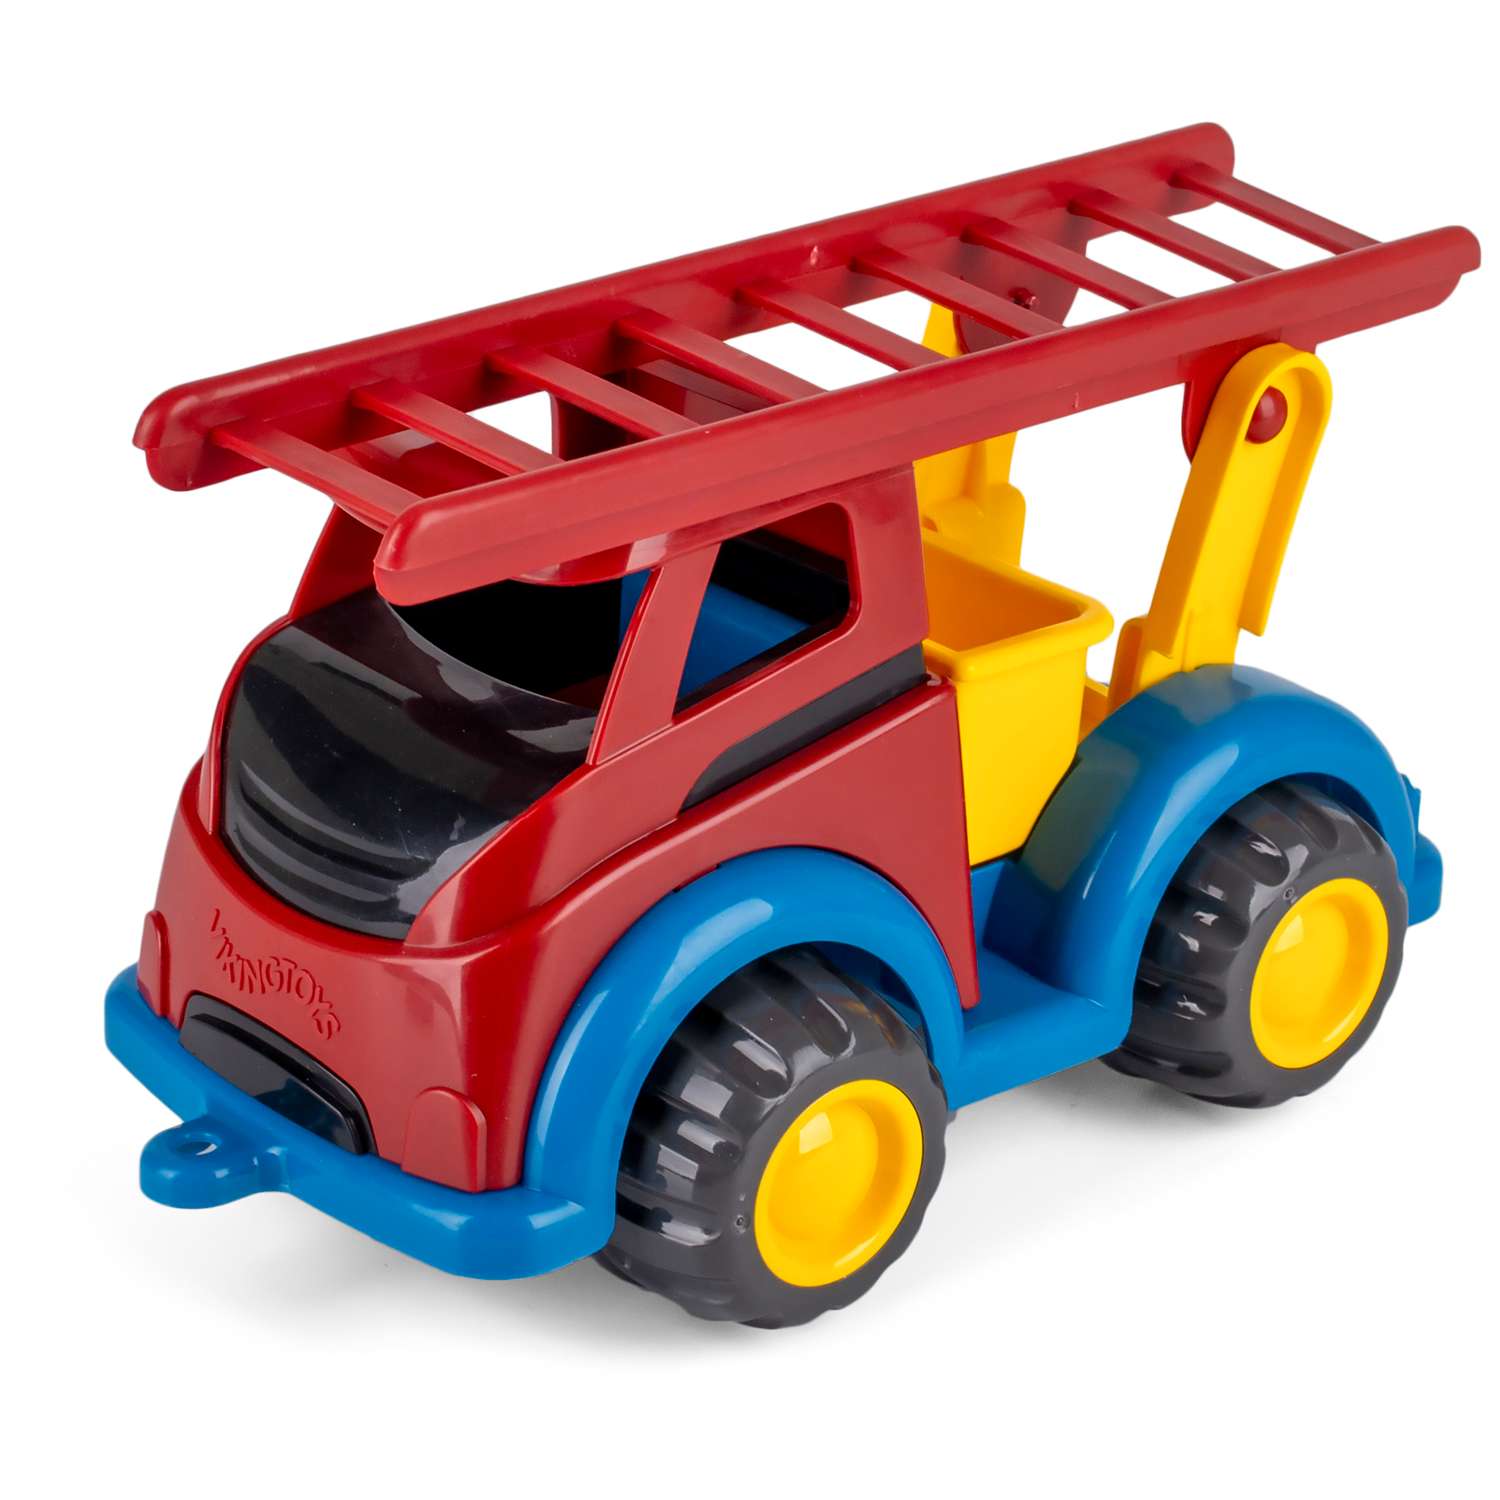 Детский транспорт - колеса машины